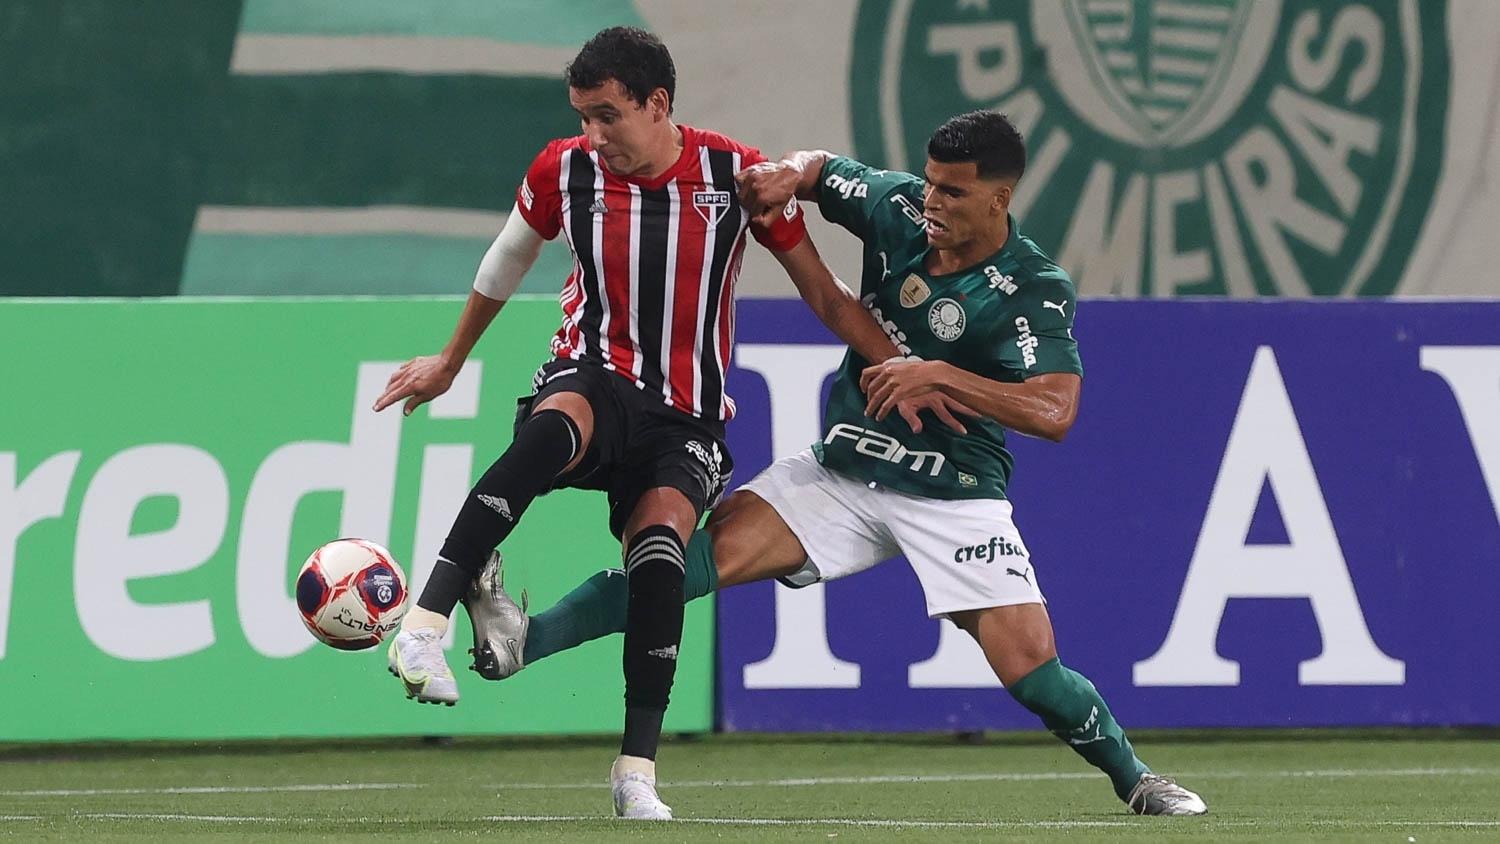 Sao Paulo Vence Palmeiras Com Gol De Pablo E Dispara No Paulistao